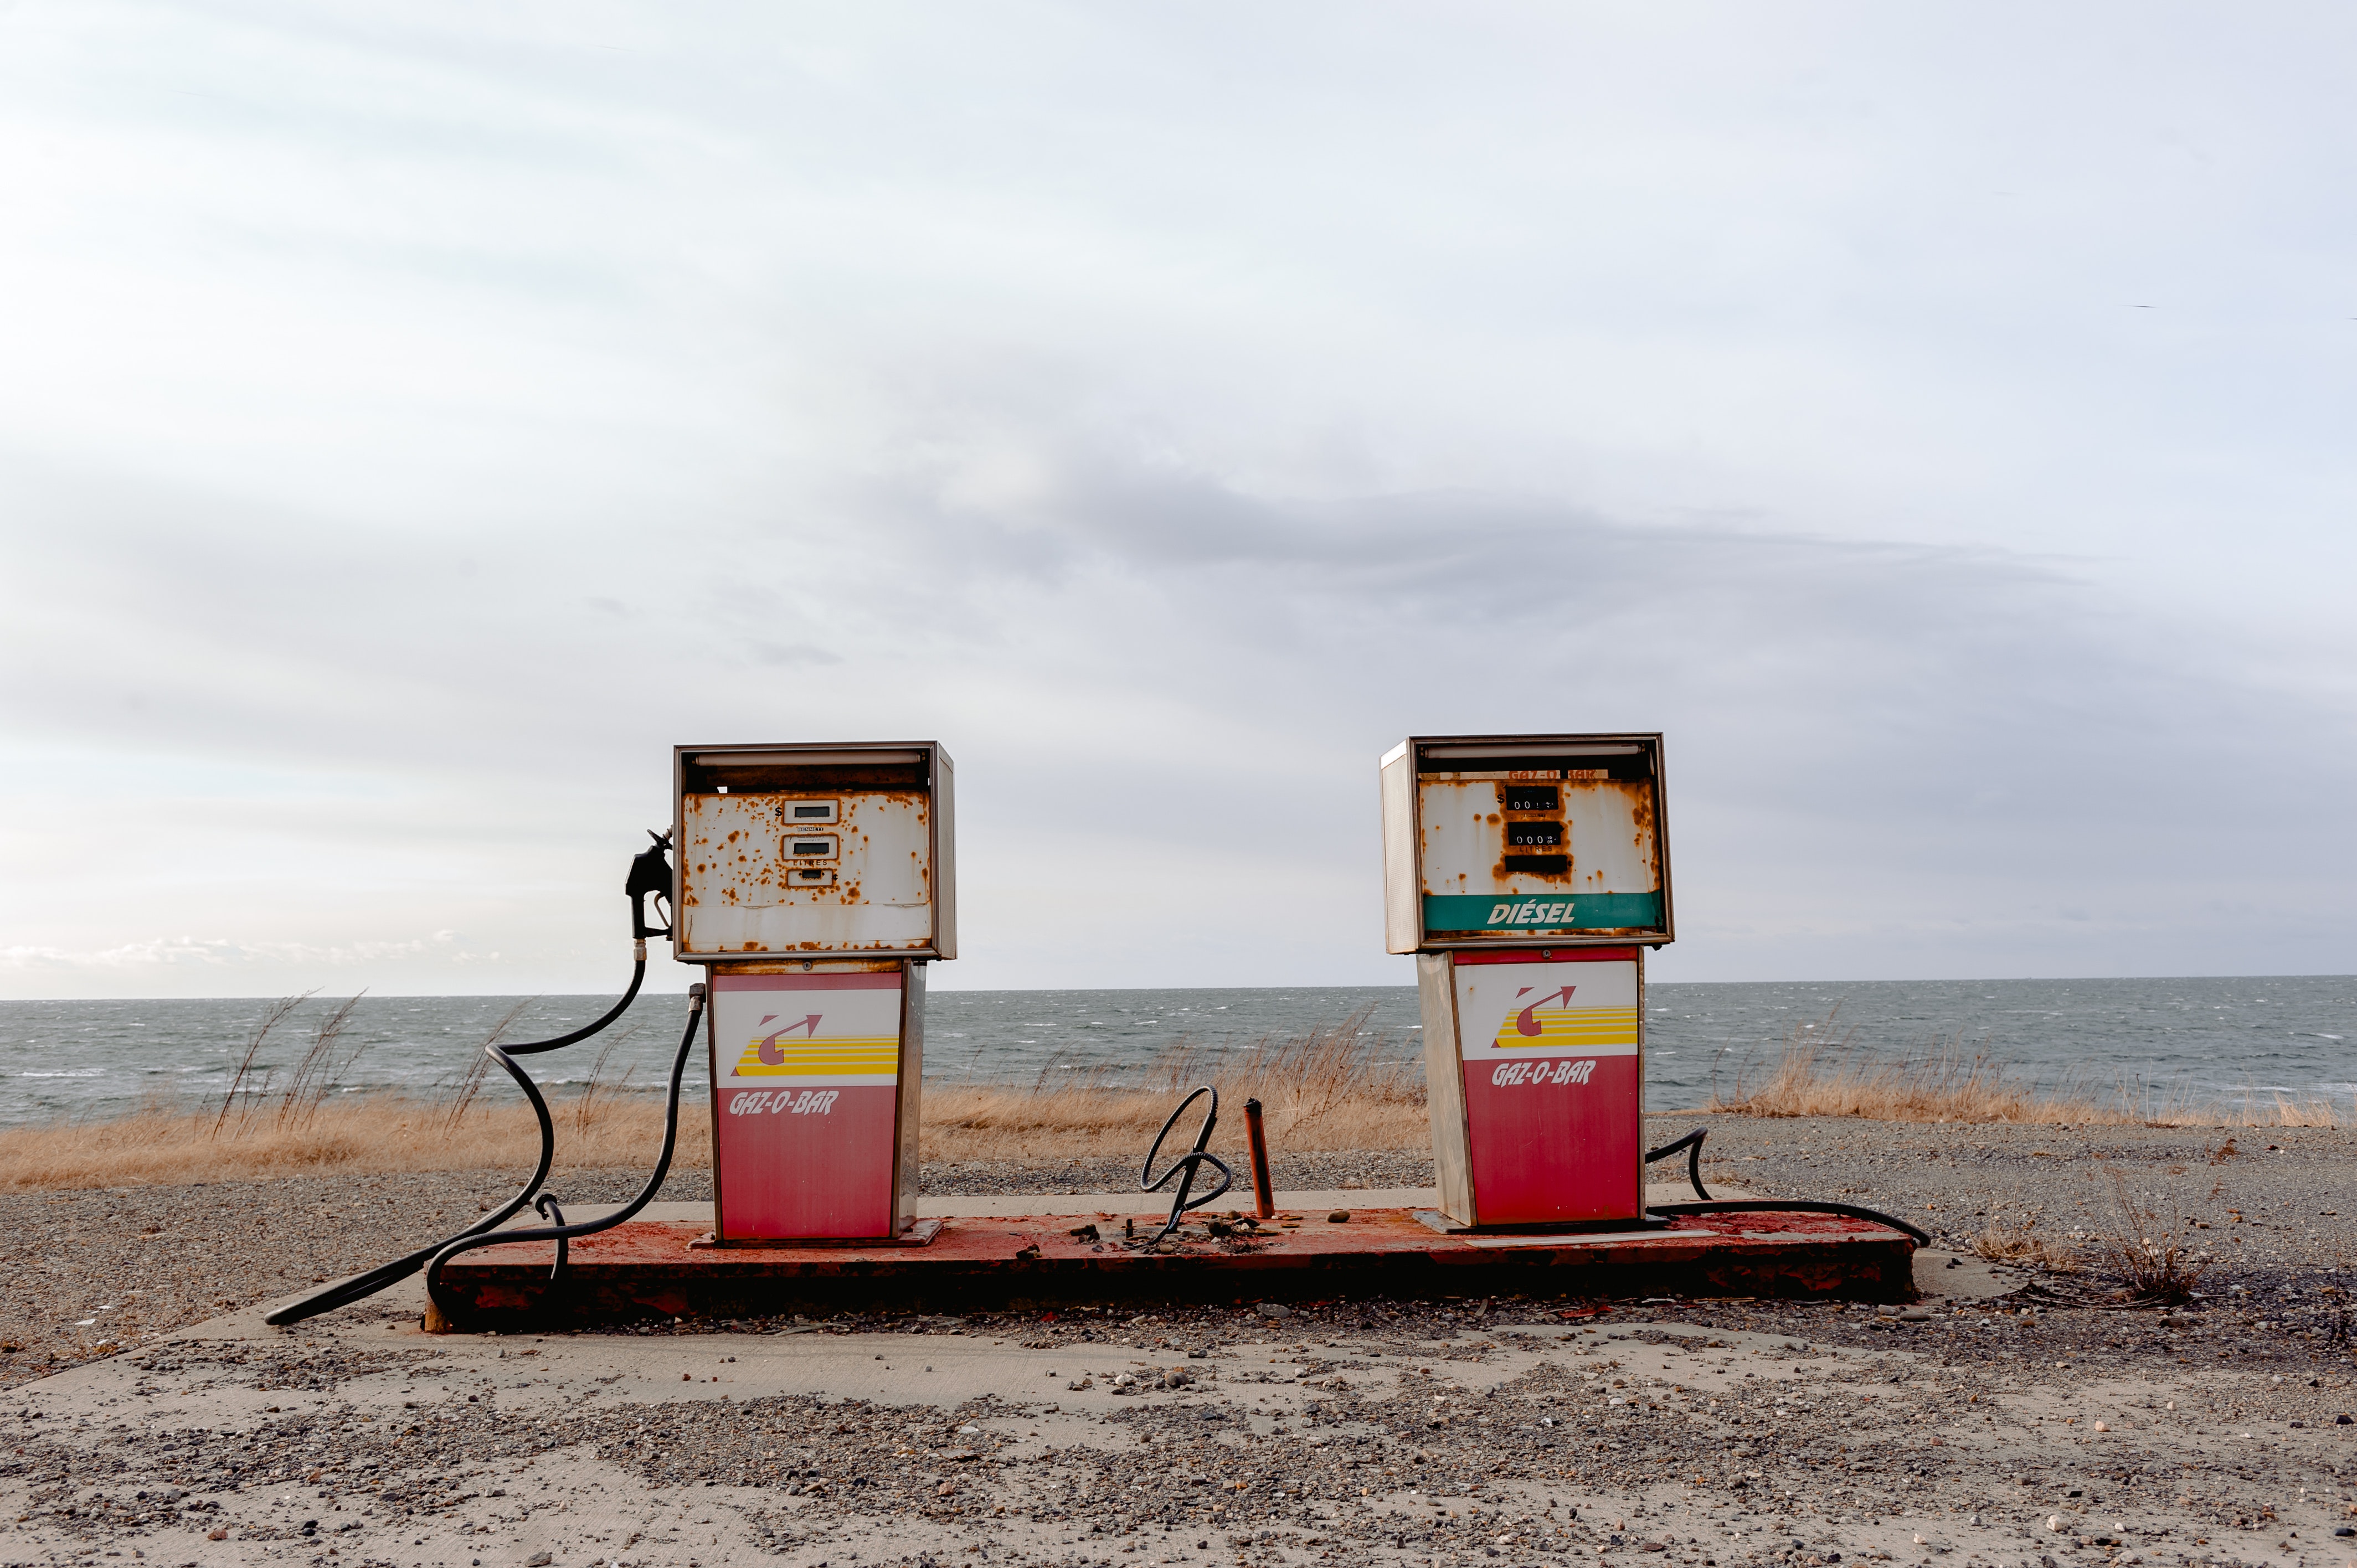 abandoned gas station